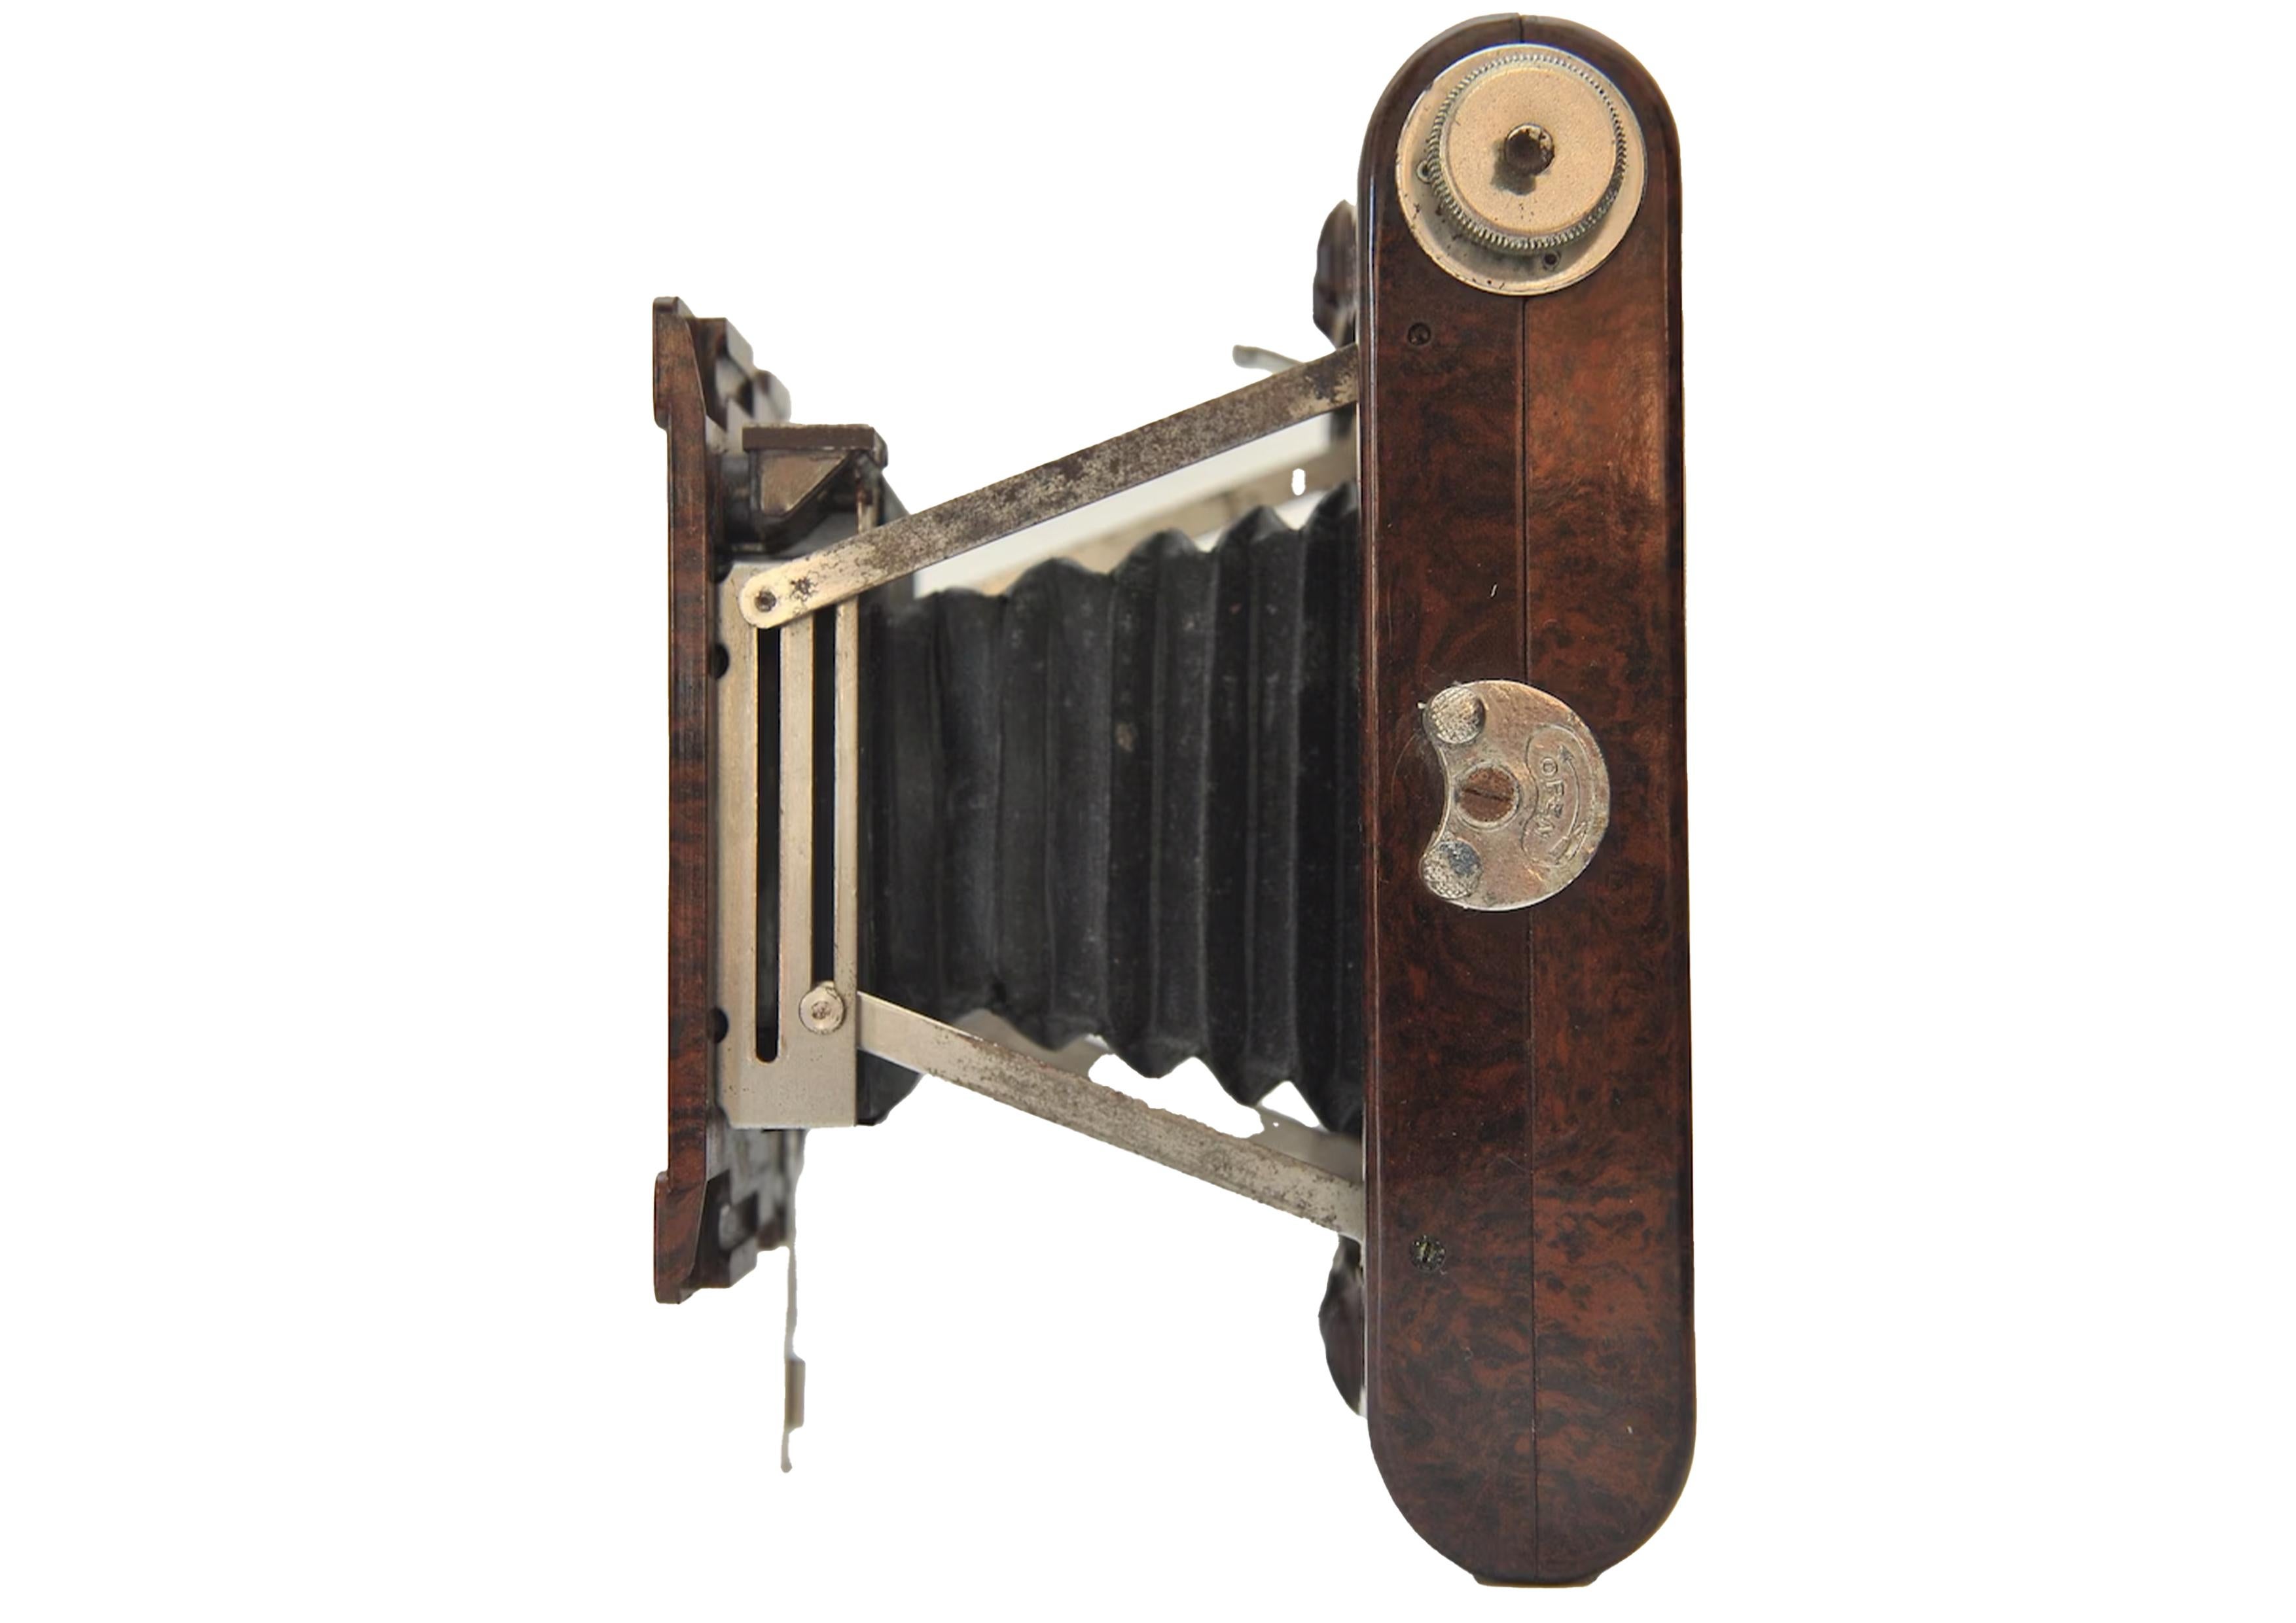 Kodak No 2 Hawkette Marbled Bakelite 120 Roll Film Strut Folding Camera With Meniscus Lens & Rotary Shutter Made in the UK 1930's

Fabriqué à partir de pièces moulées en bakélite brune produites par K.K. Cole Ltd (Southend) et fabriqué à l'usine